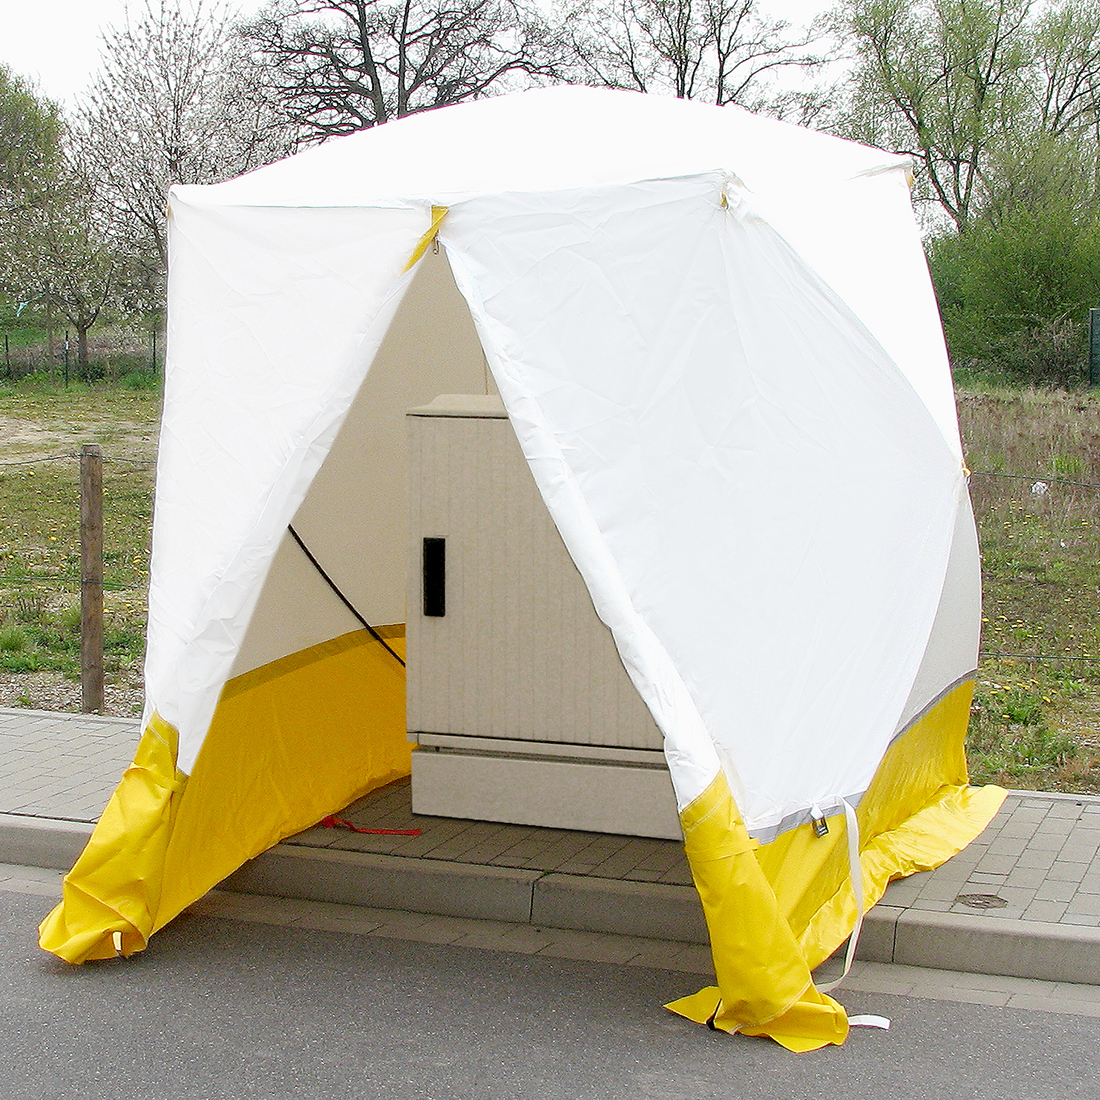 Montažni šatori: Spremno za korištenje po vjetru i vremenu